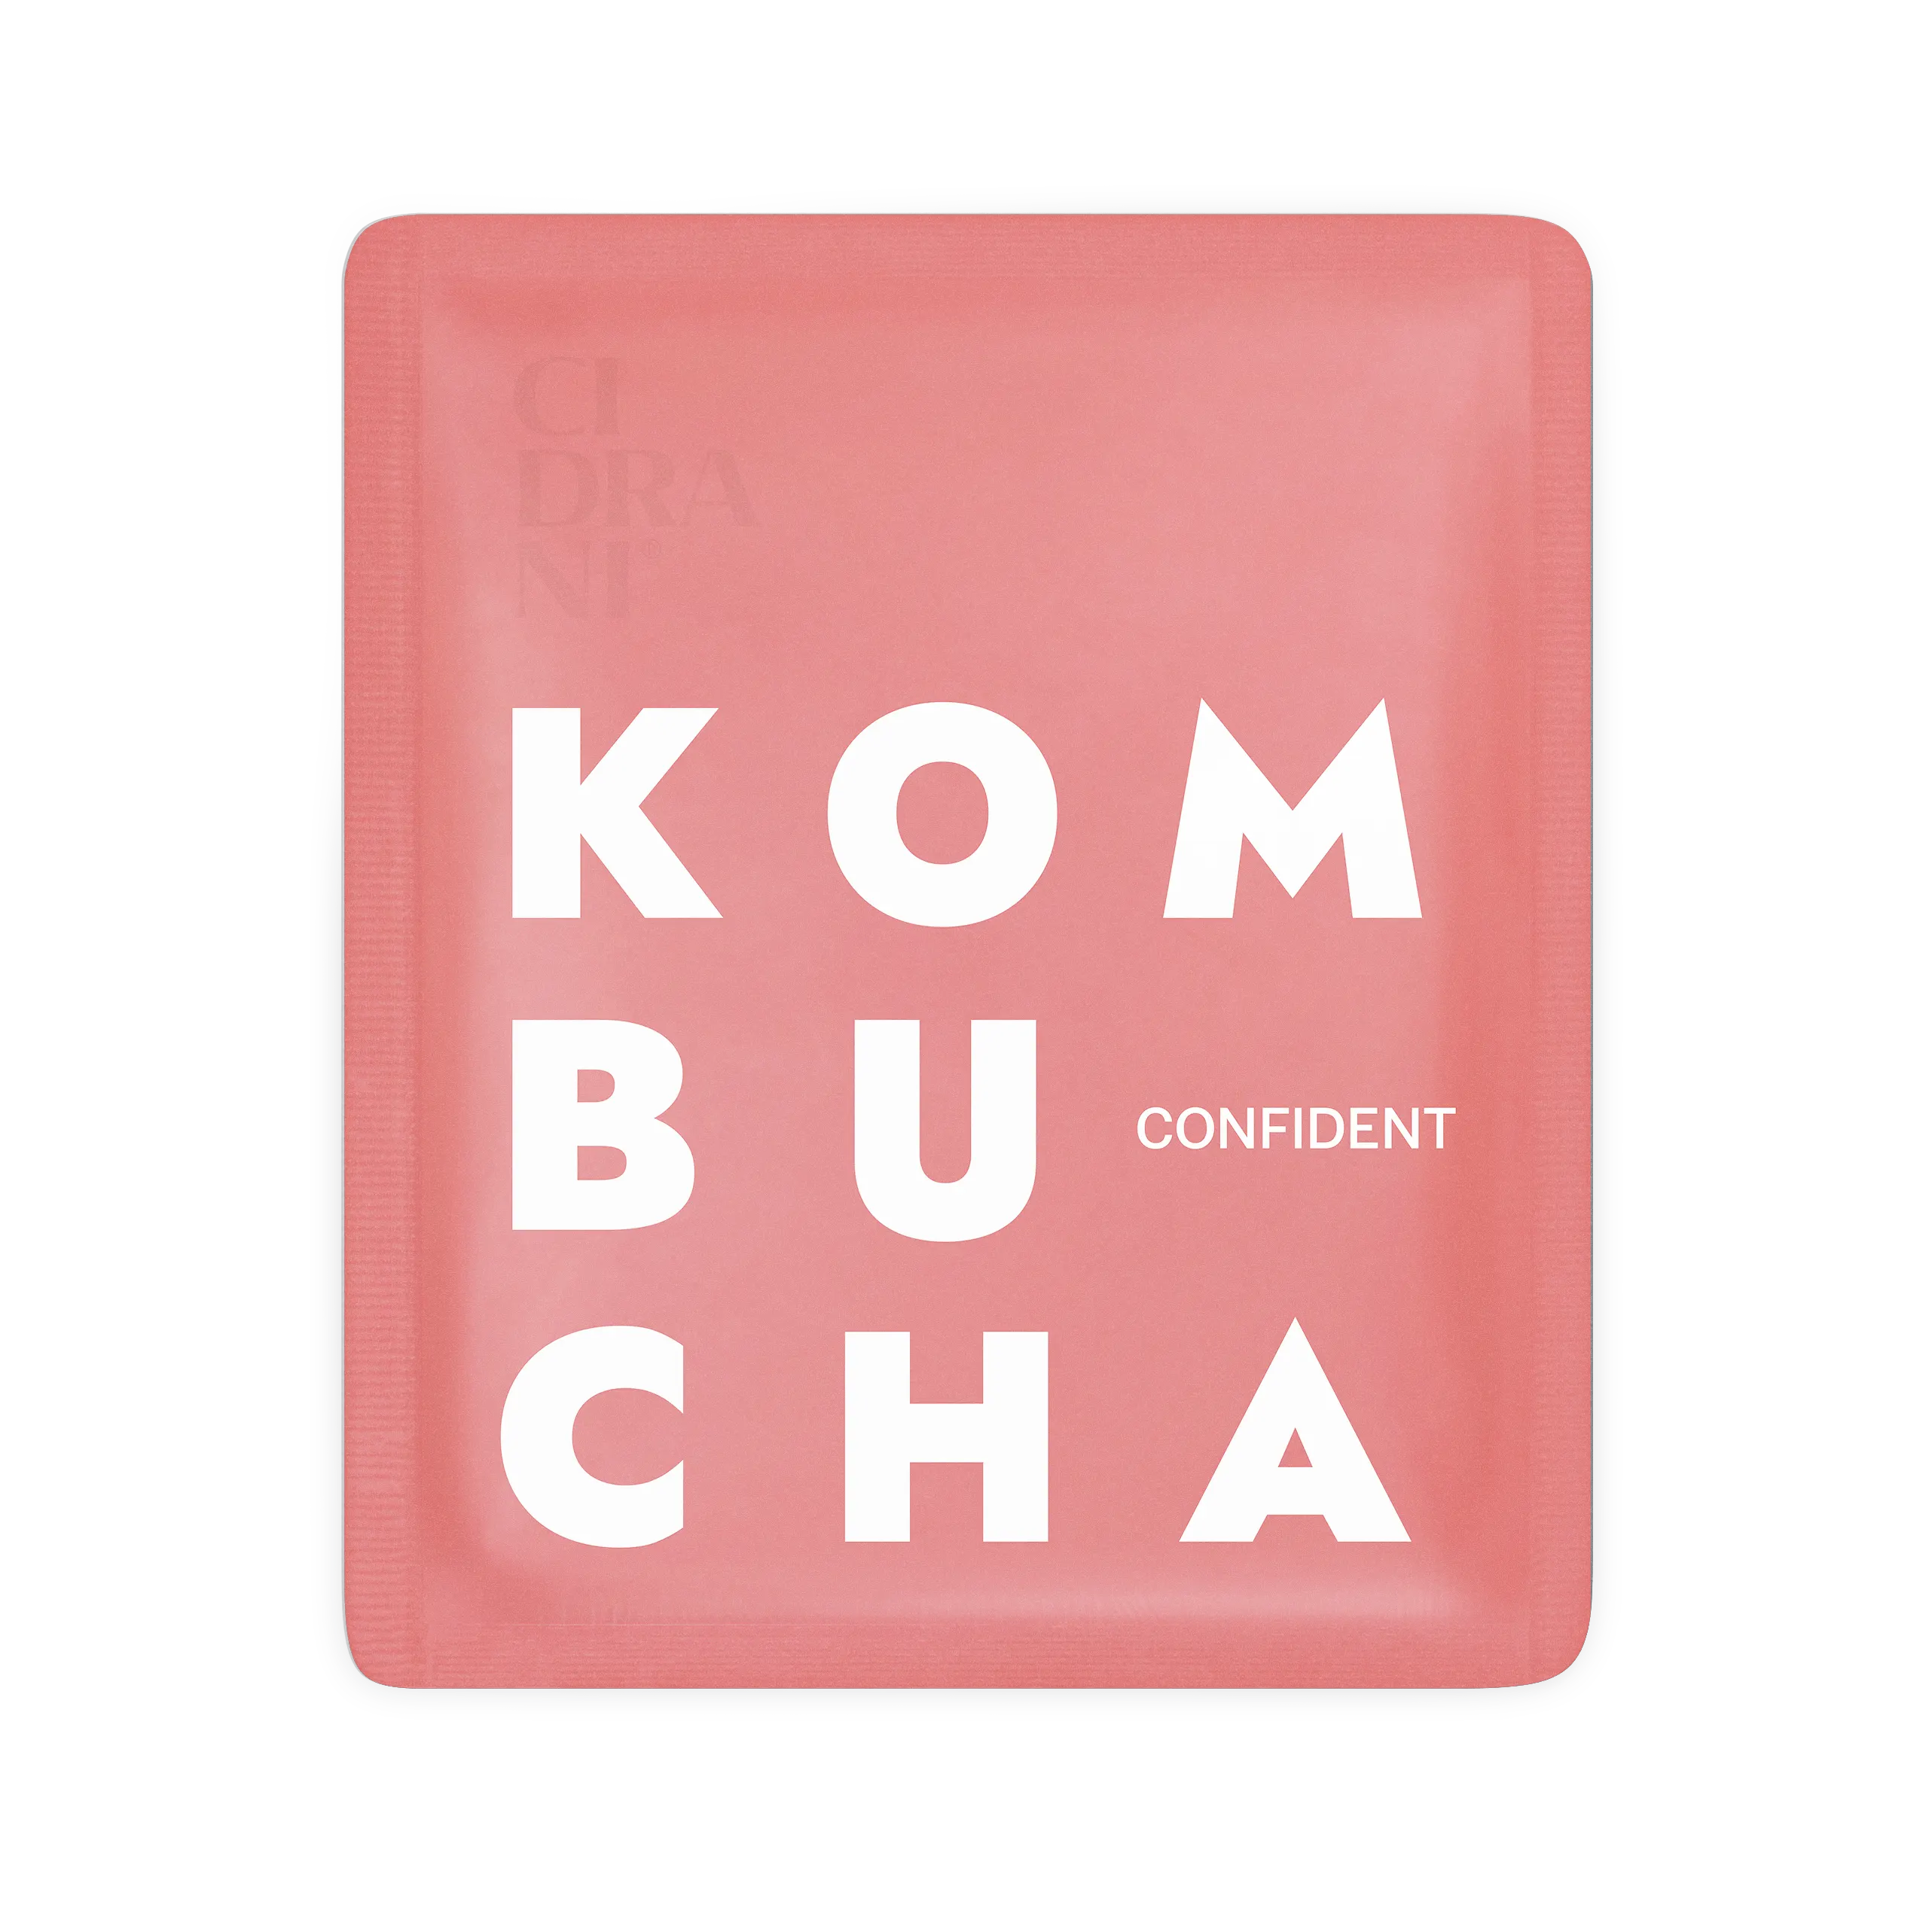 Micro-bautura fermentata, Kombucha Confident, bio, 17ml [0]